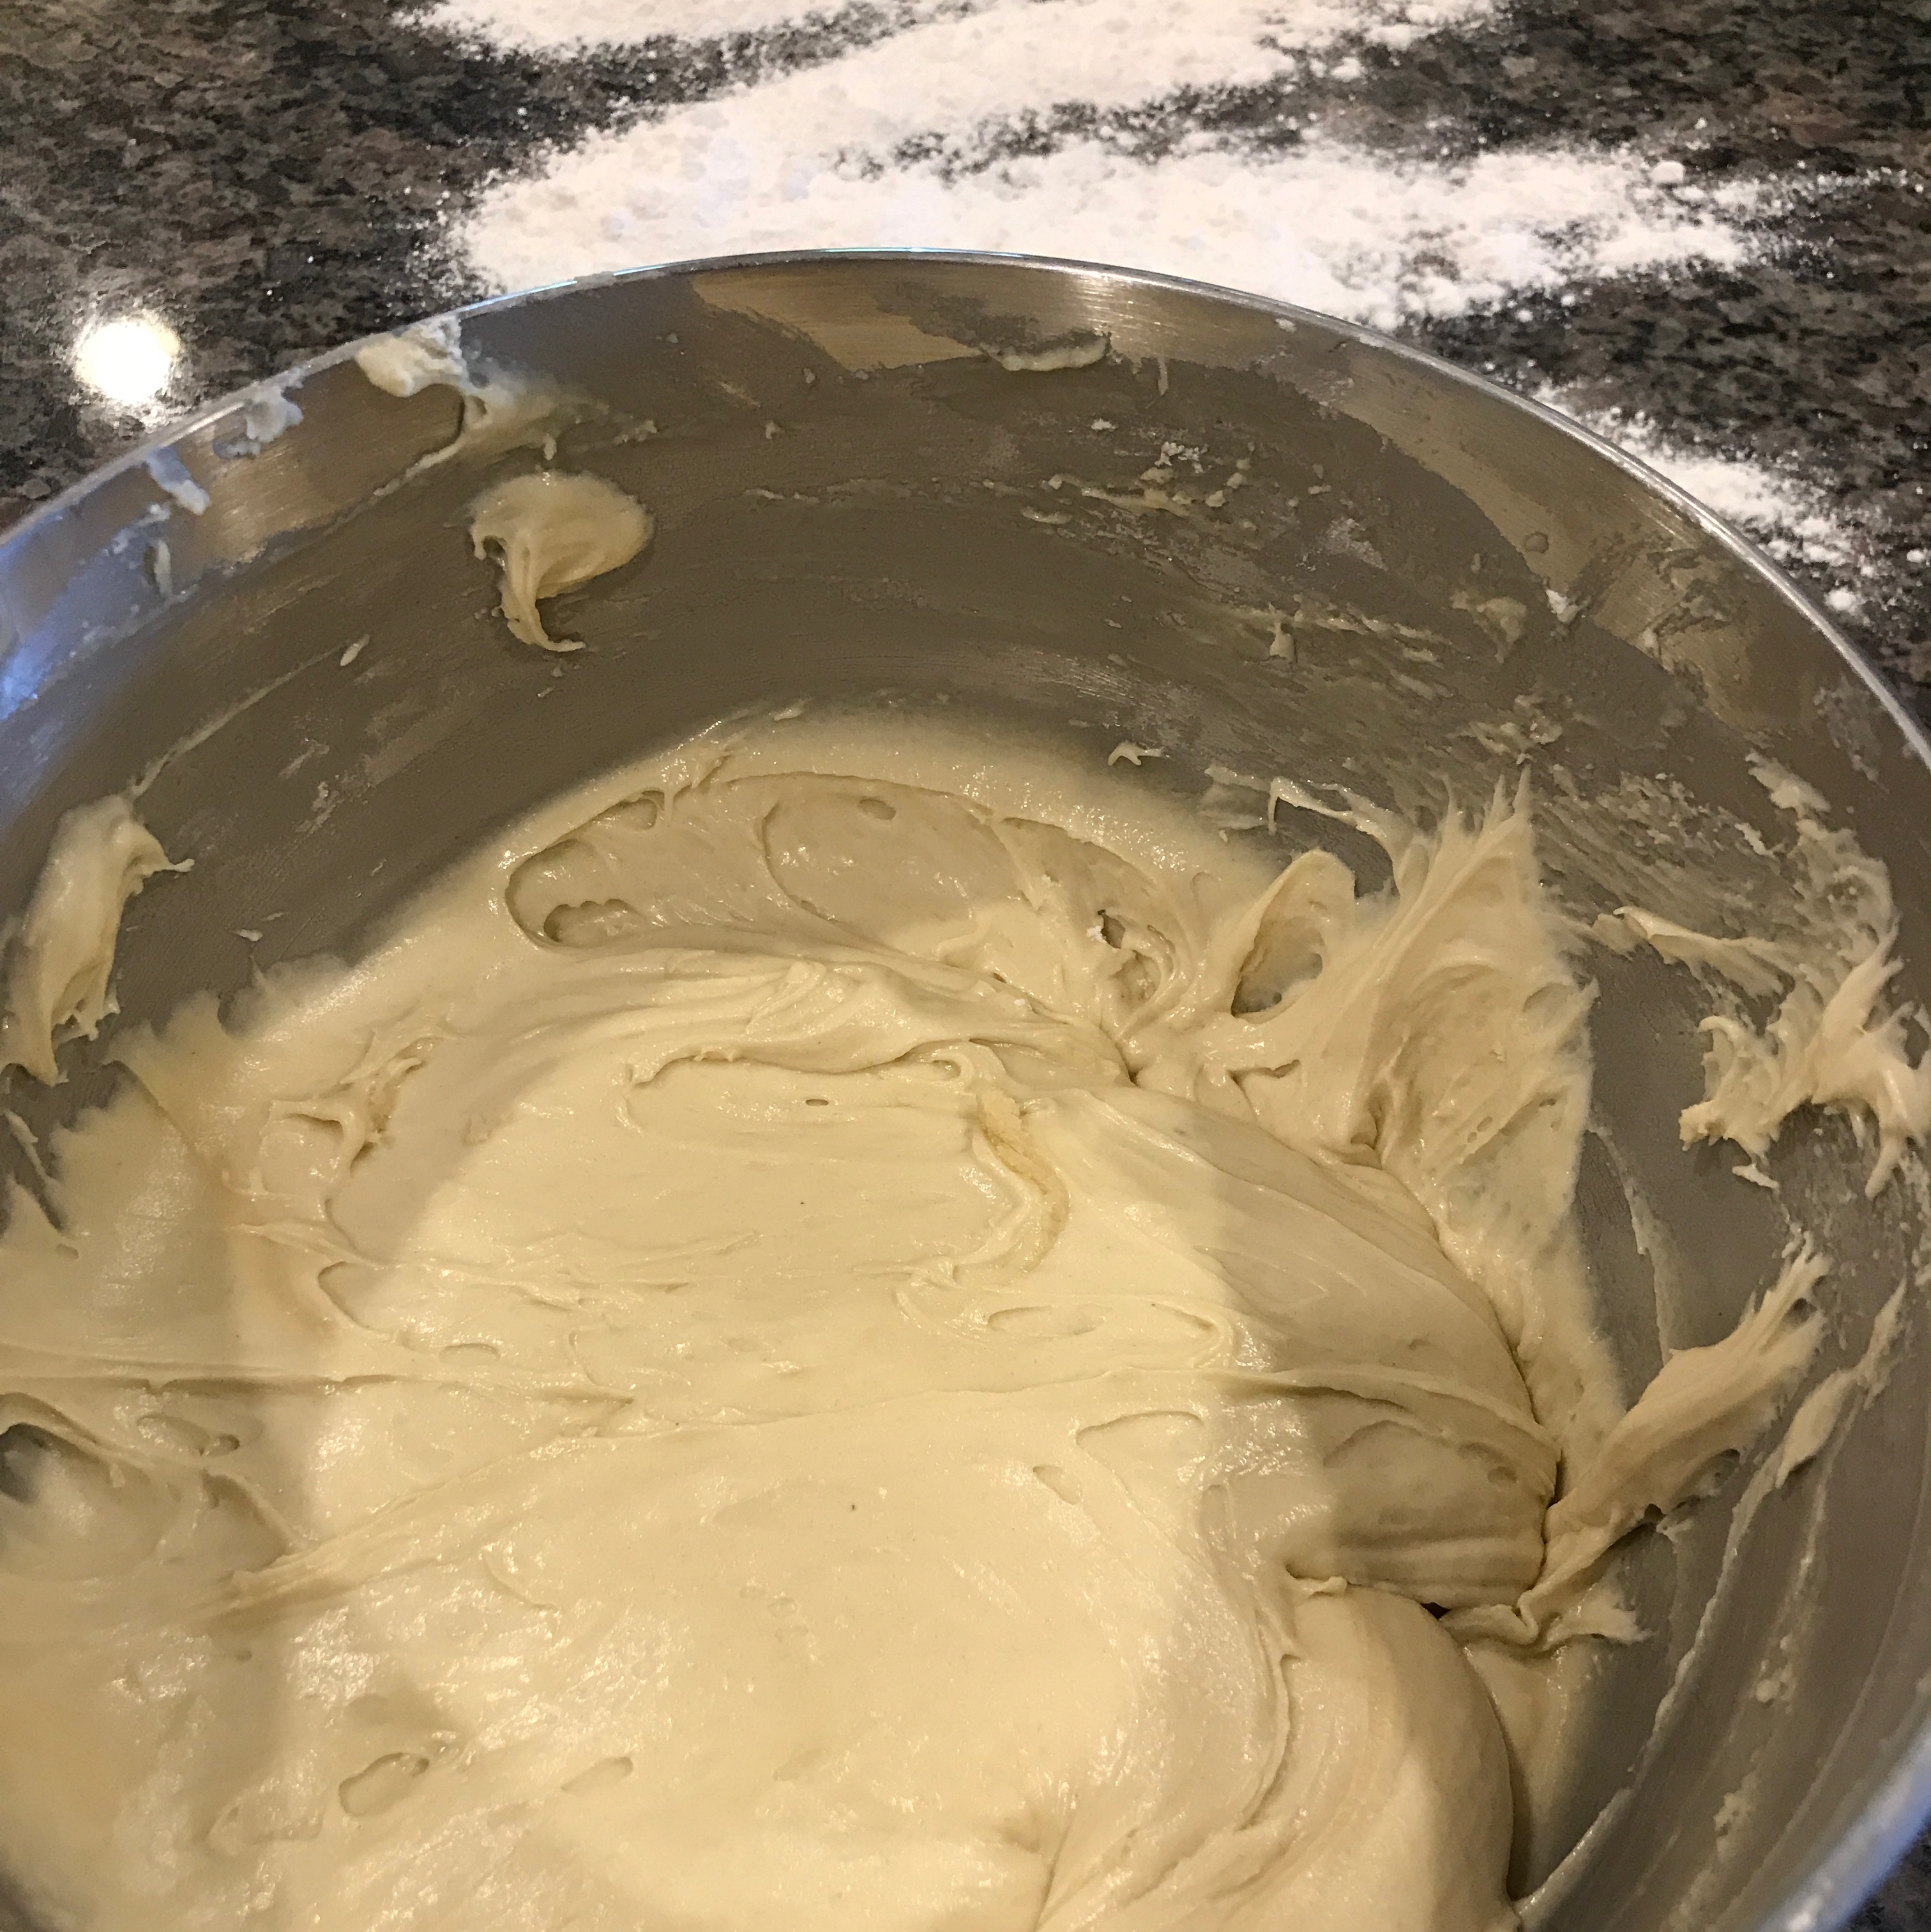 Sour Cream Sugar Cookies